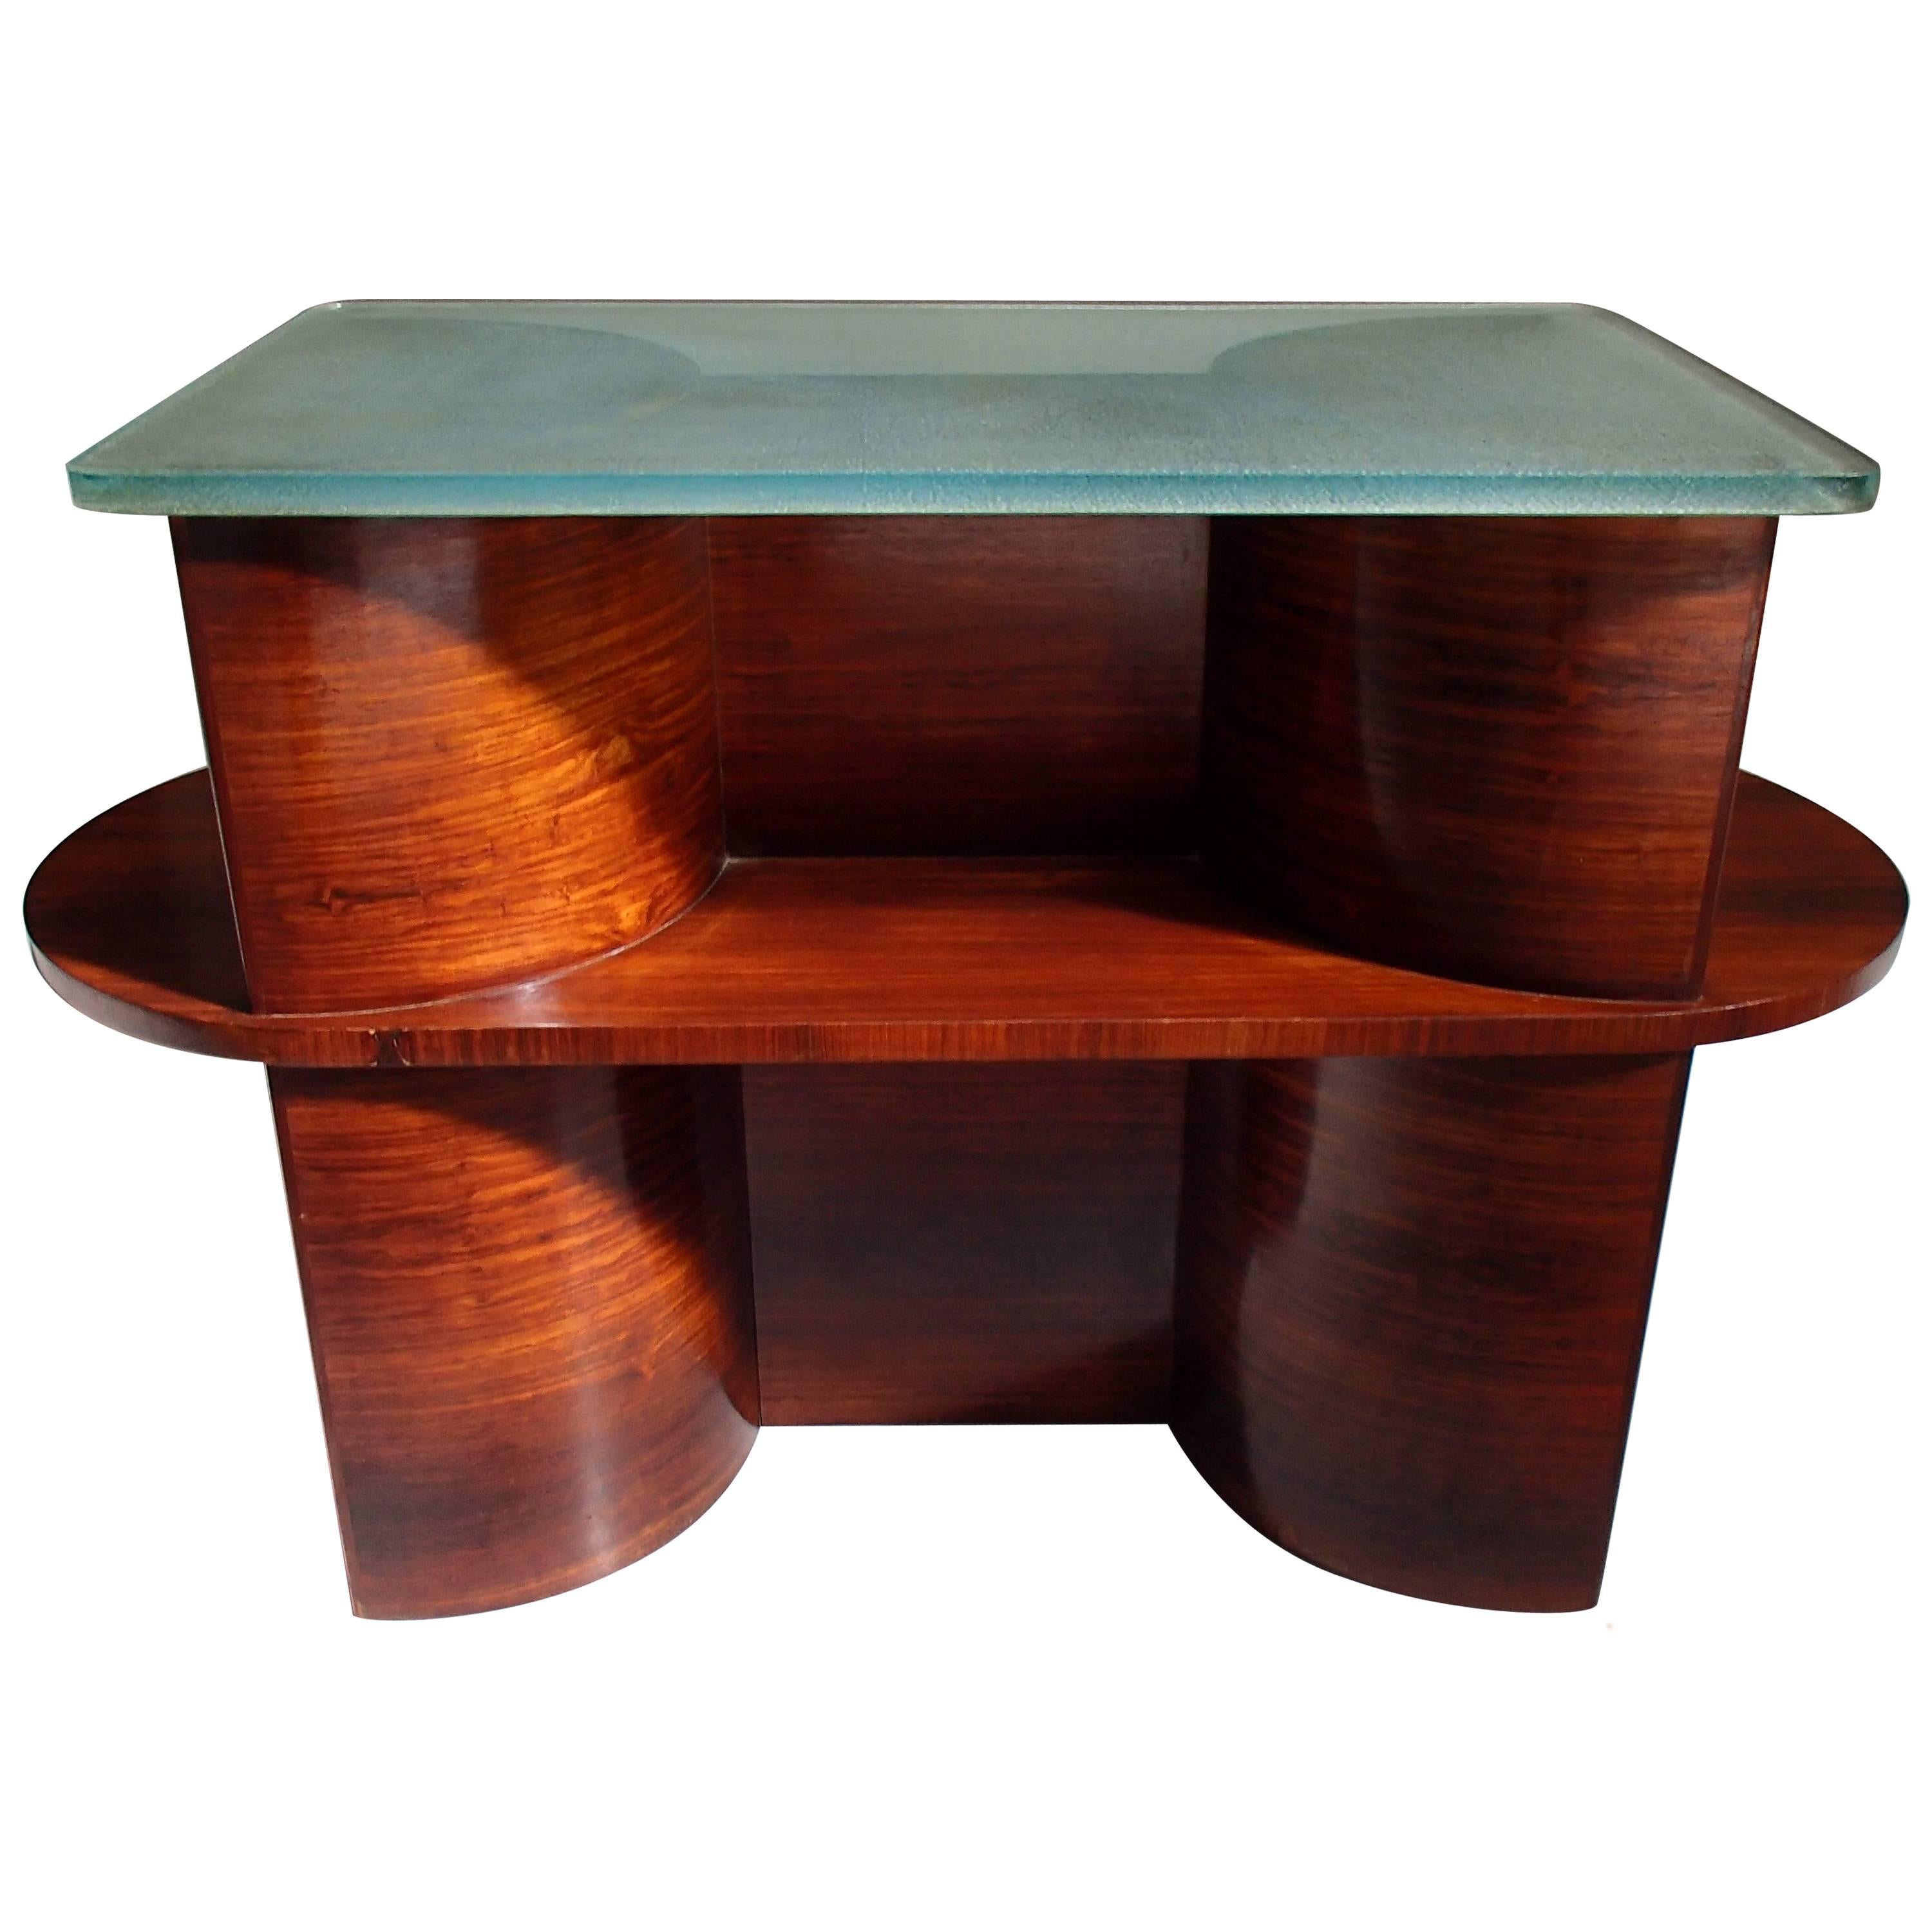 Table console cubiste moderniste de 1930 en bois de rose et plateau en verre épais